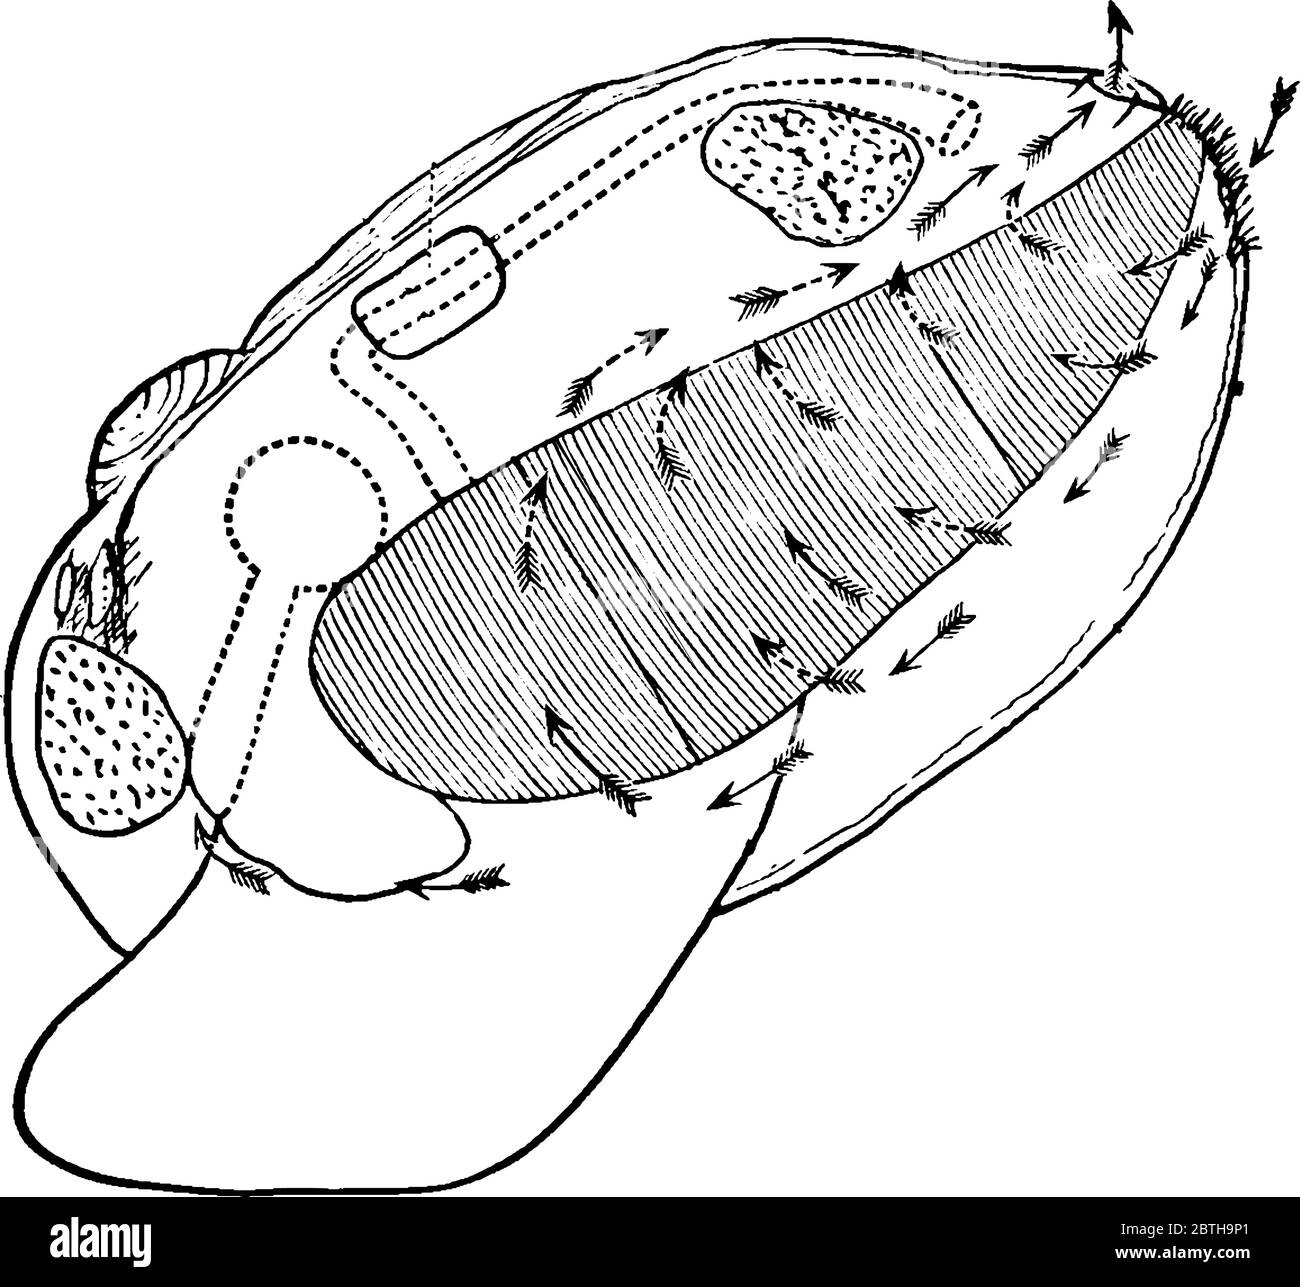 Muschel ist eine Muschel Muschel, Meerestiere mit einer Muschel in zwei Teilen, die eng zusammen schließen können, genannt Muschel Muschel, Vintage-Linie Zeichnung oder Engravi Stock Vektor